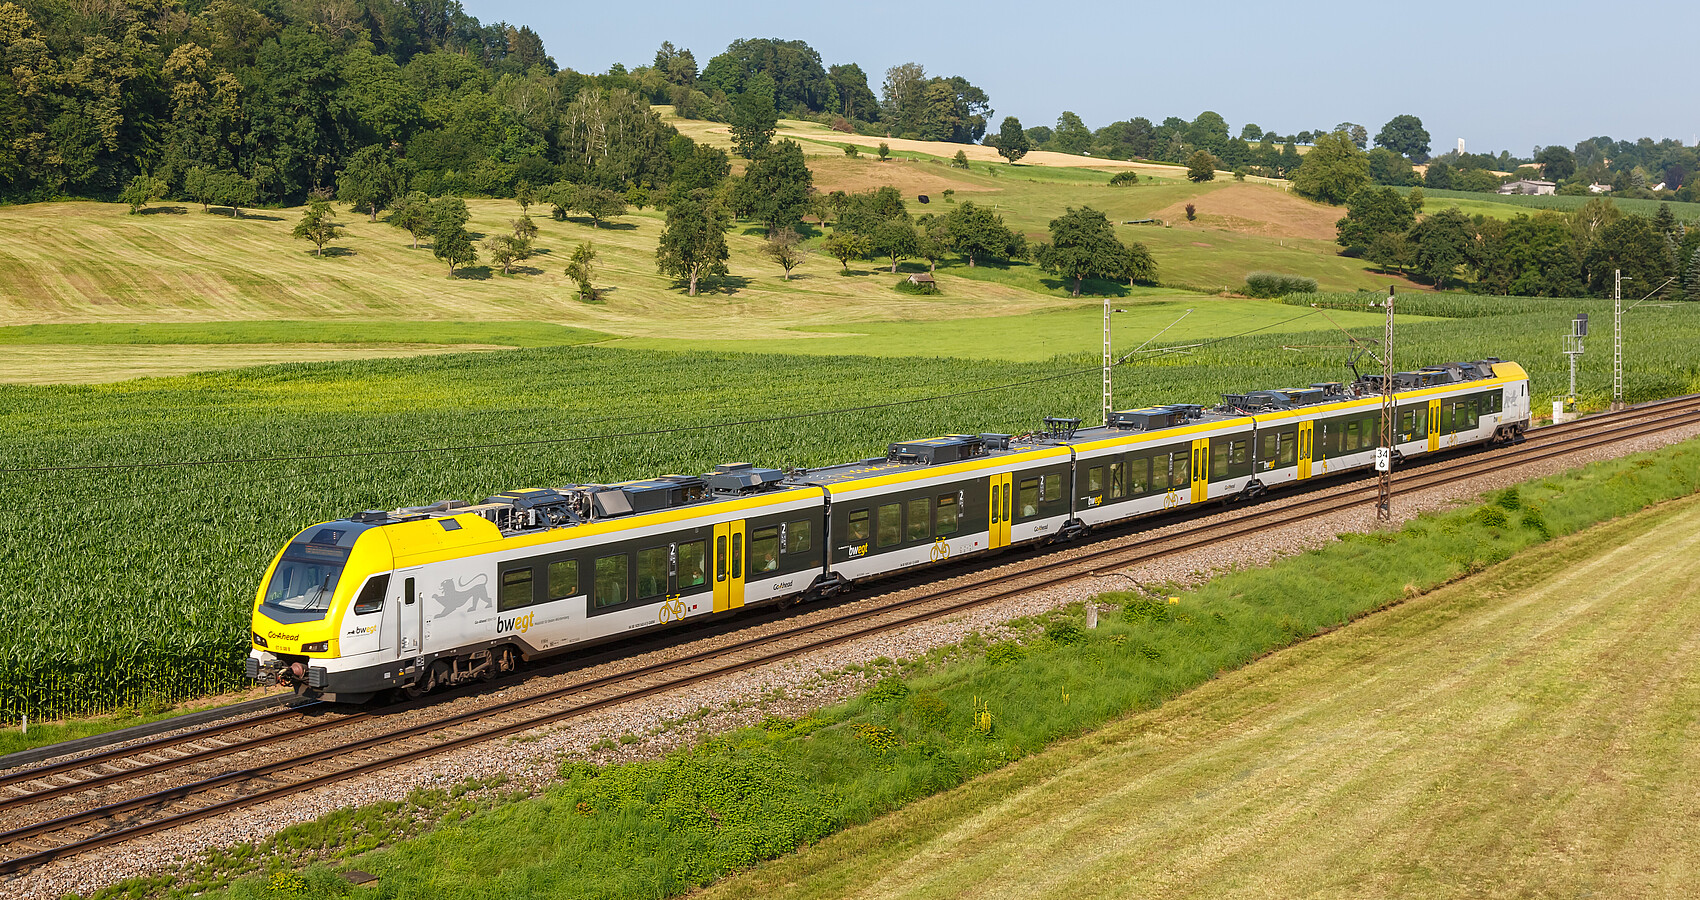 Das Bild zeigt einen gelben Regionalzug der durch ein Tal fährt